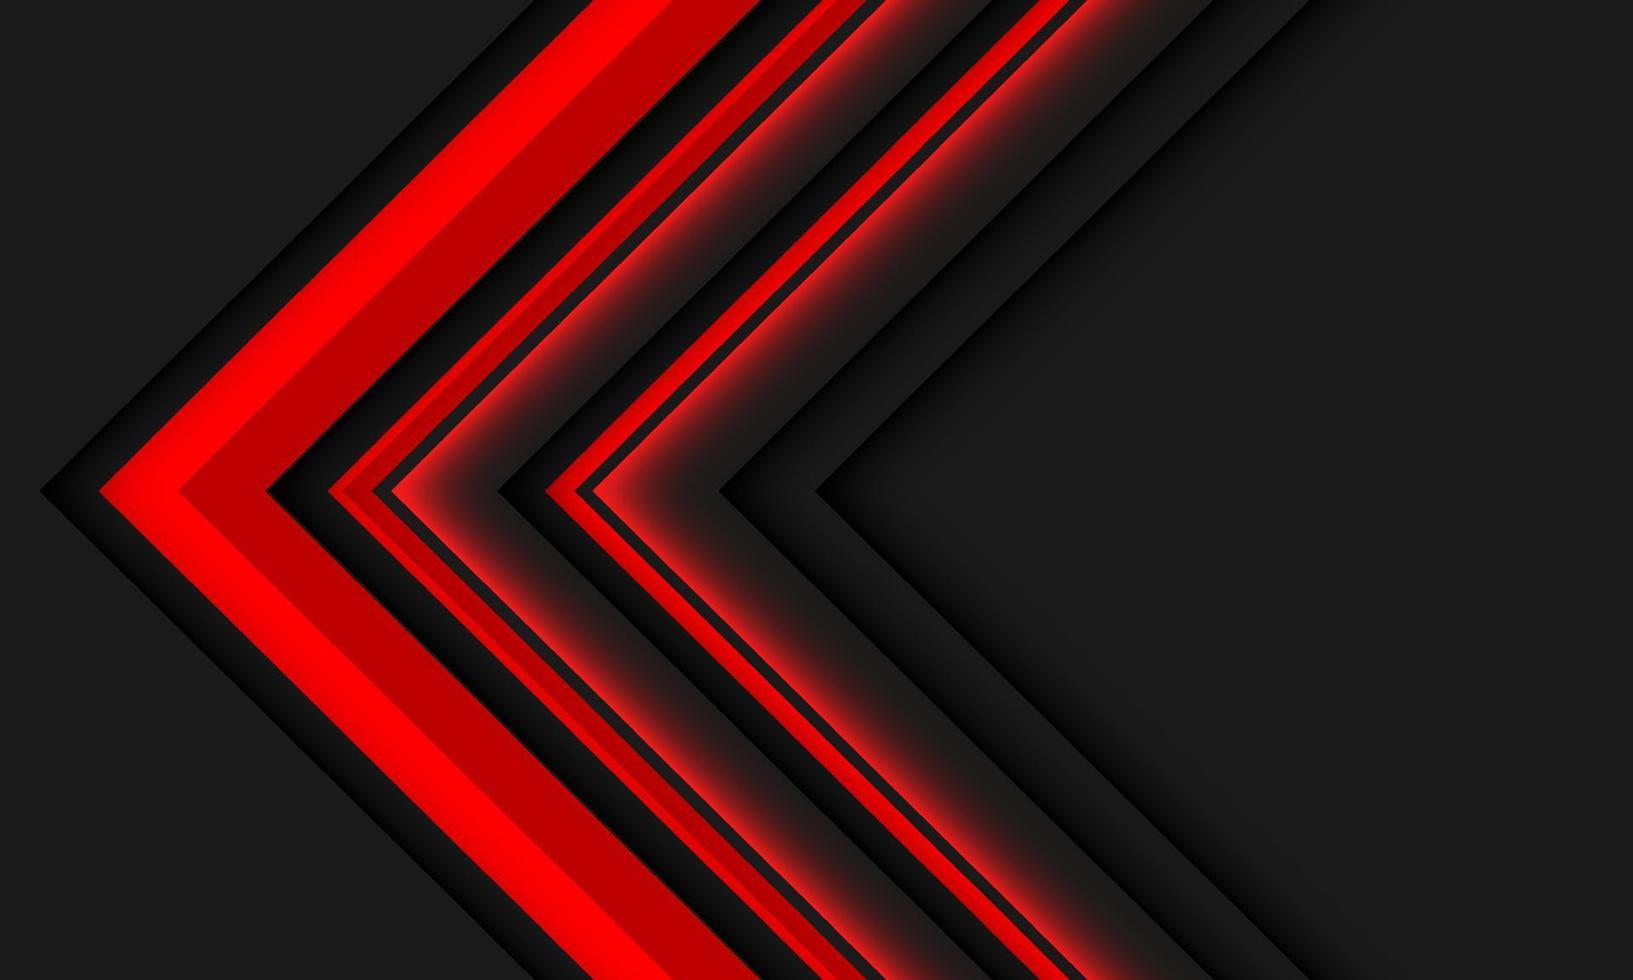 líneas rojas abstractas dirección de flecha geométrica en diseño gris vector de fondo futurista moderno